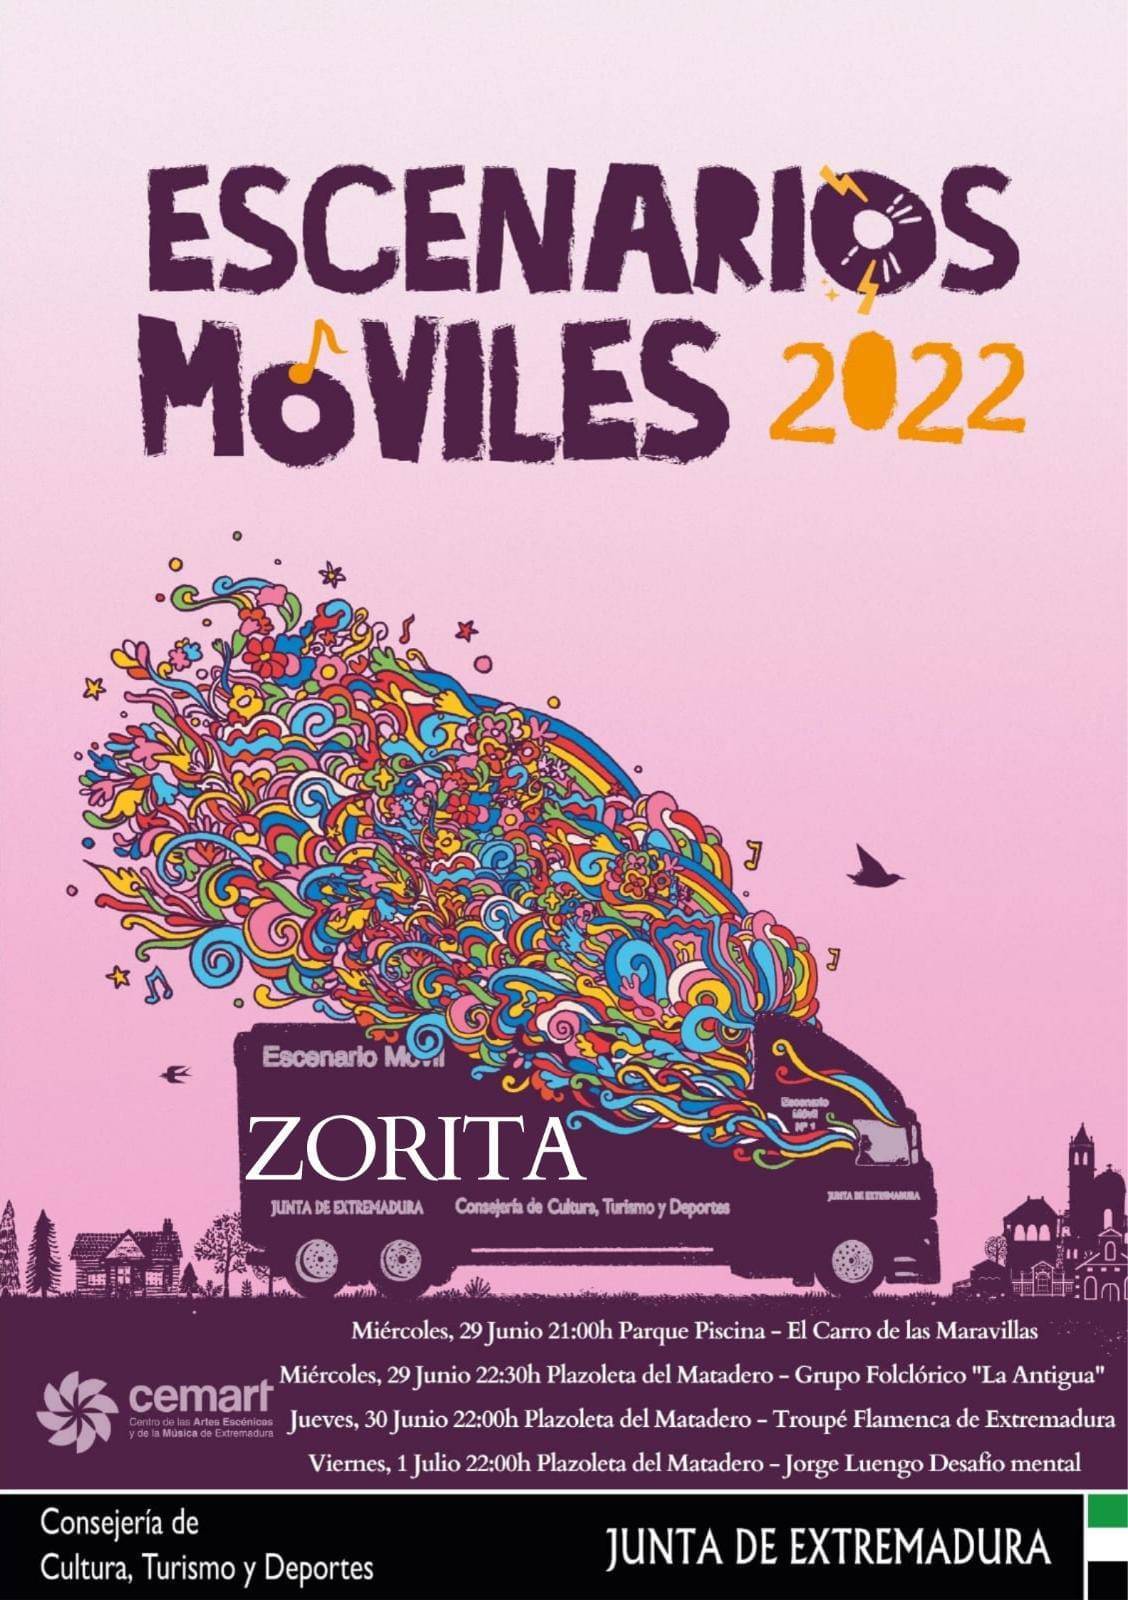 Escenarios móviles (2022) - Zorita (Cáceres)